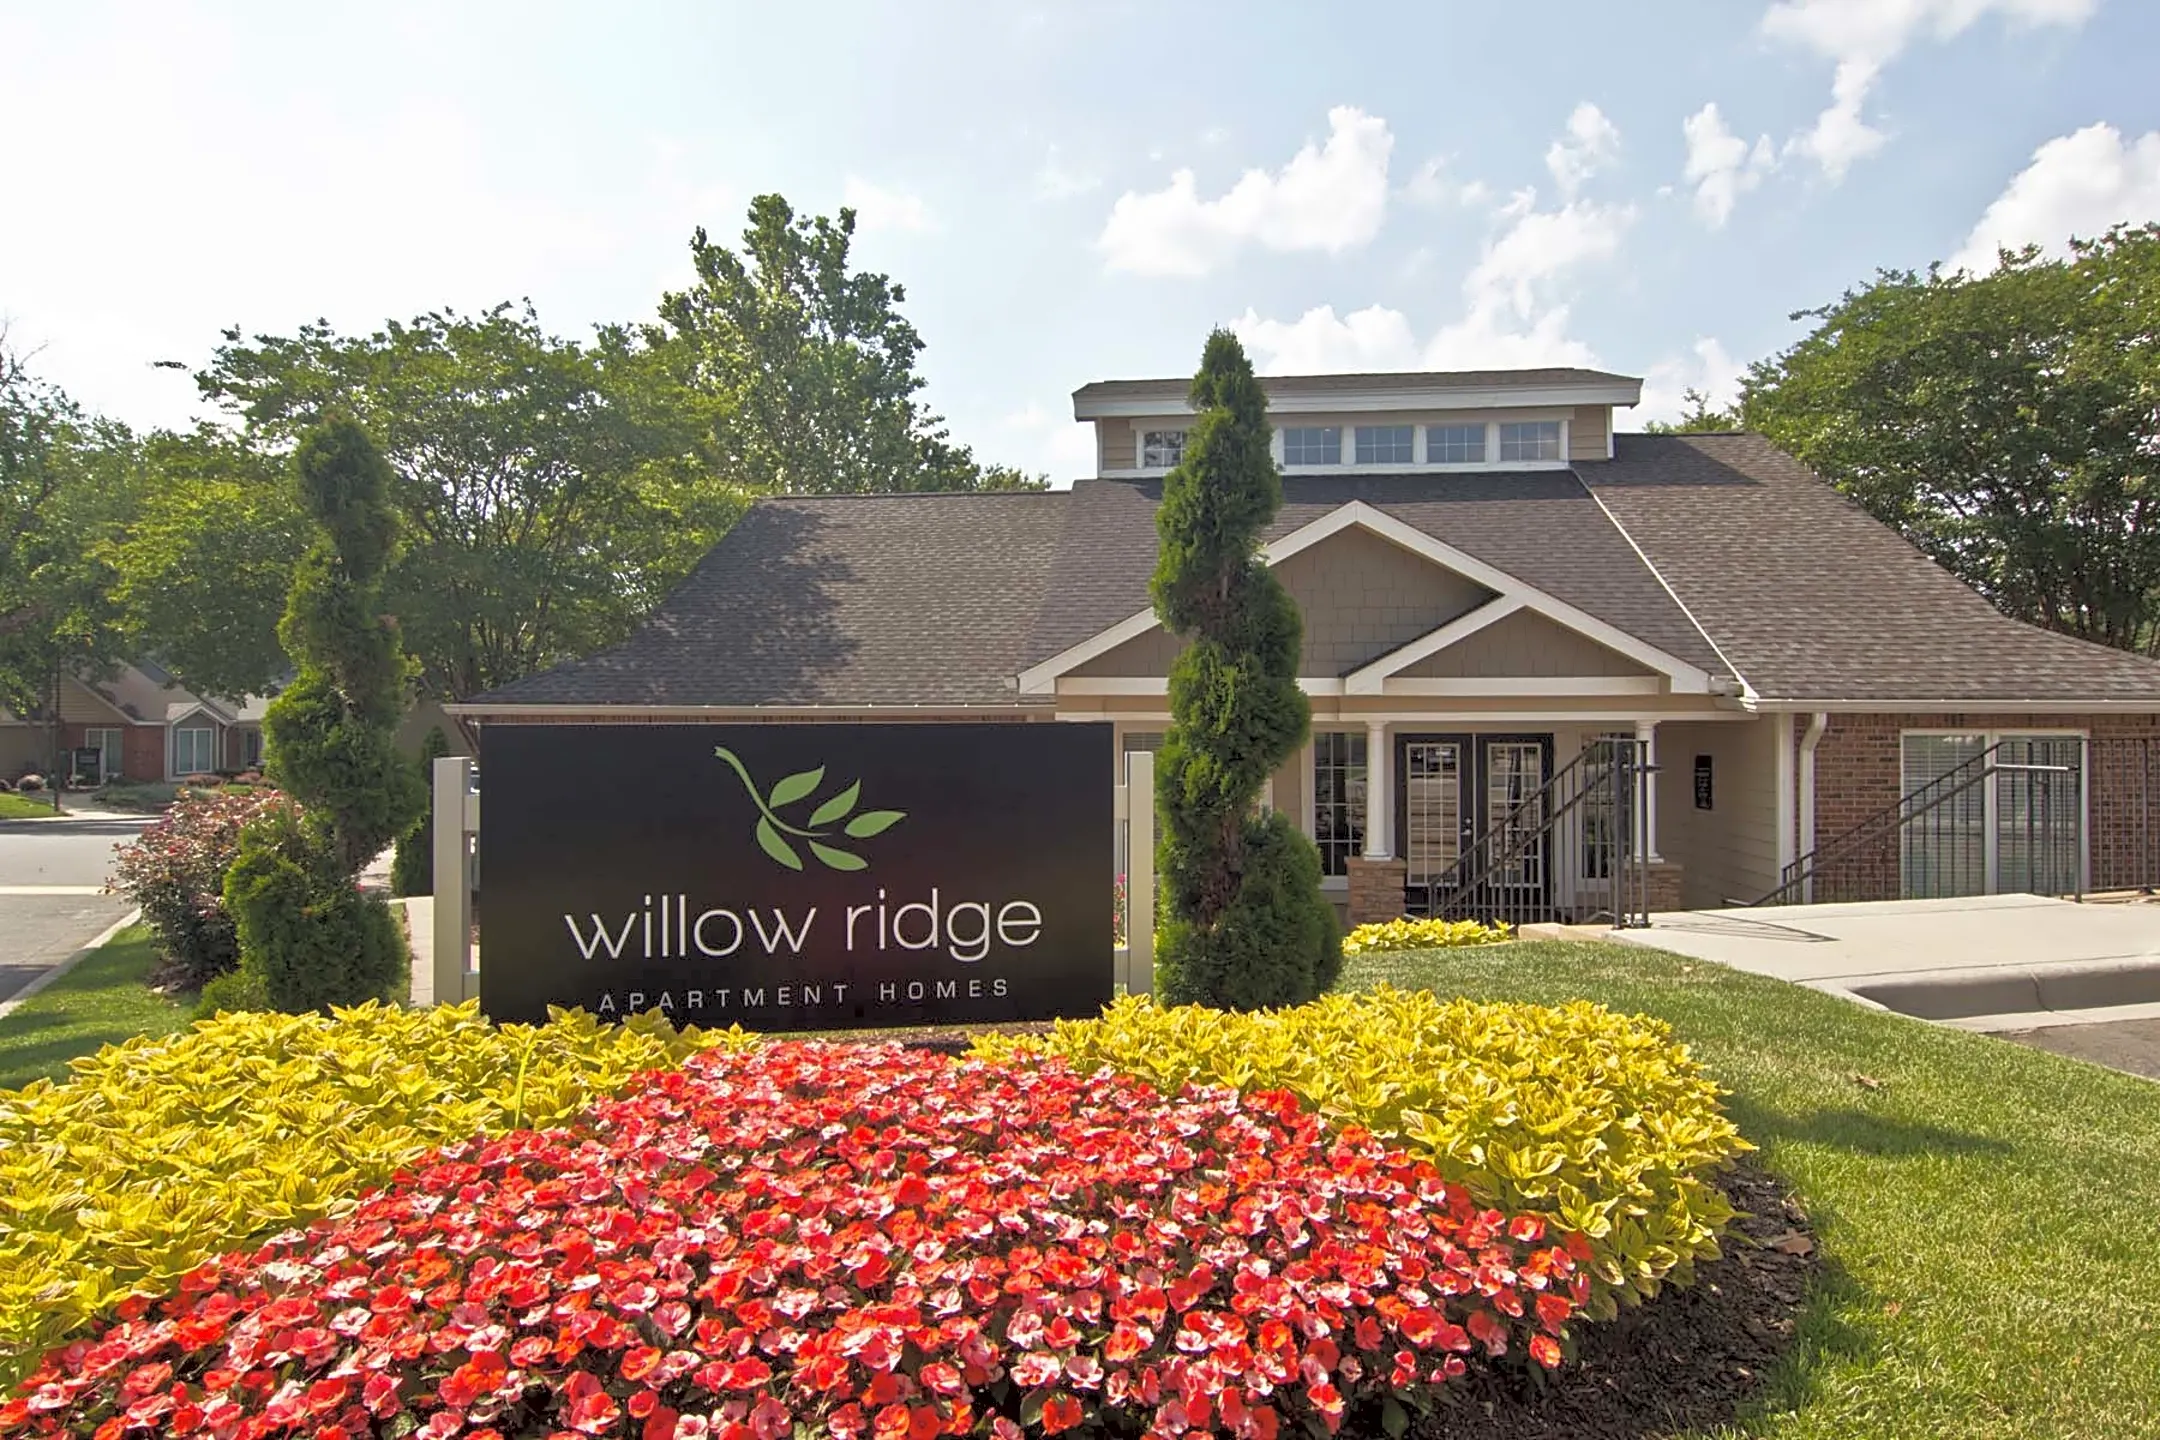 Willow Ridge - Charlotte, NC